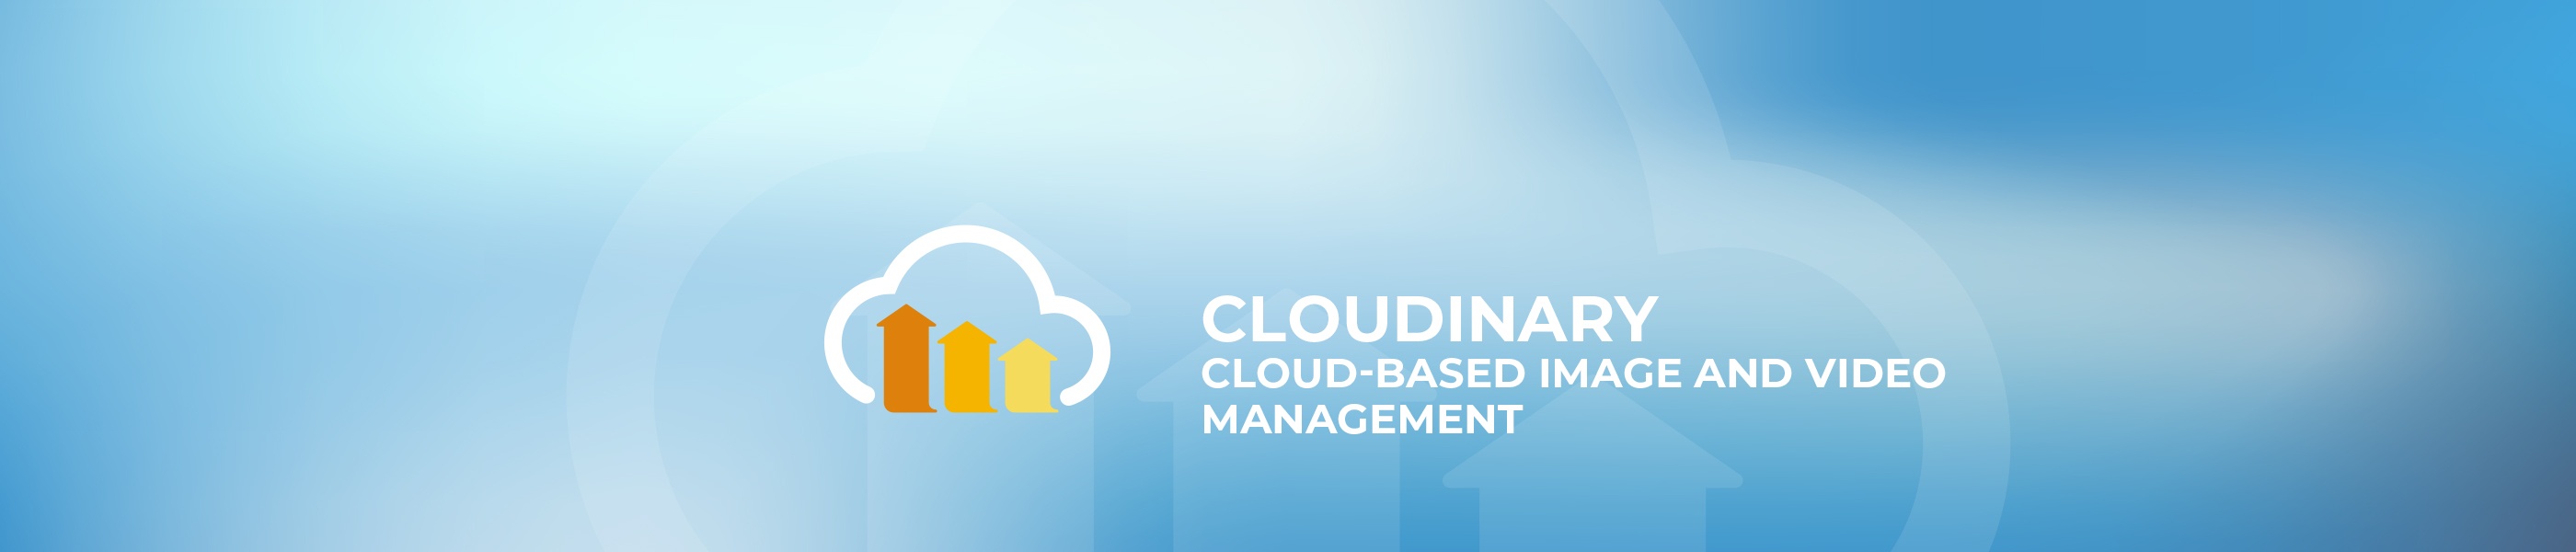 Cloudinary Partner Agency - Media automation